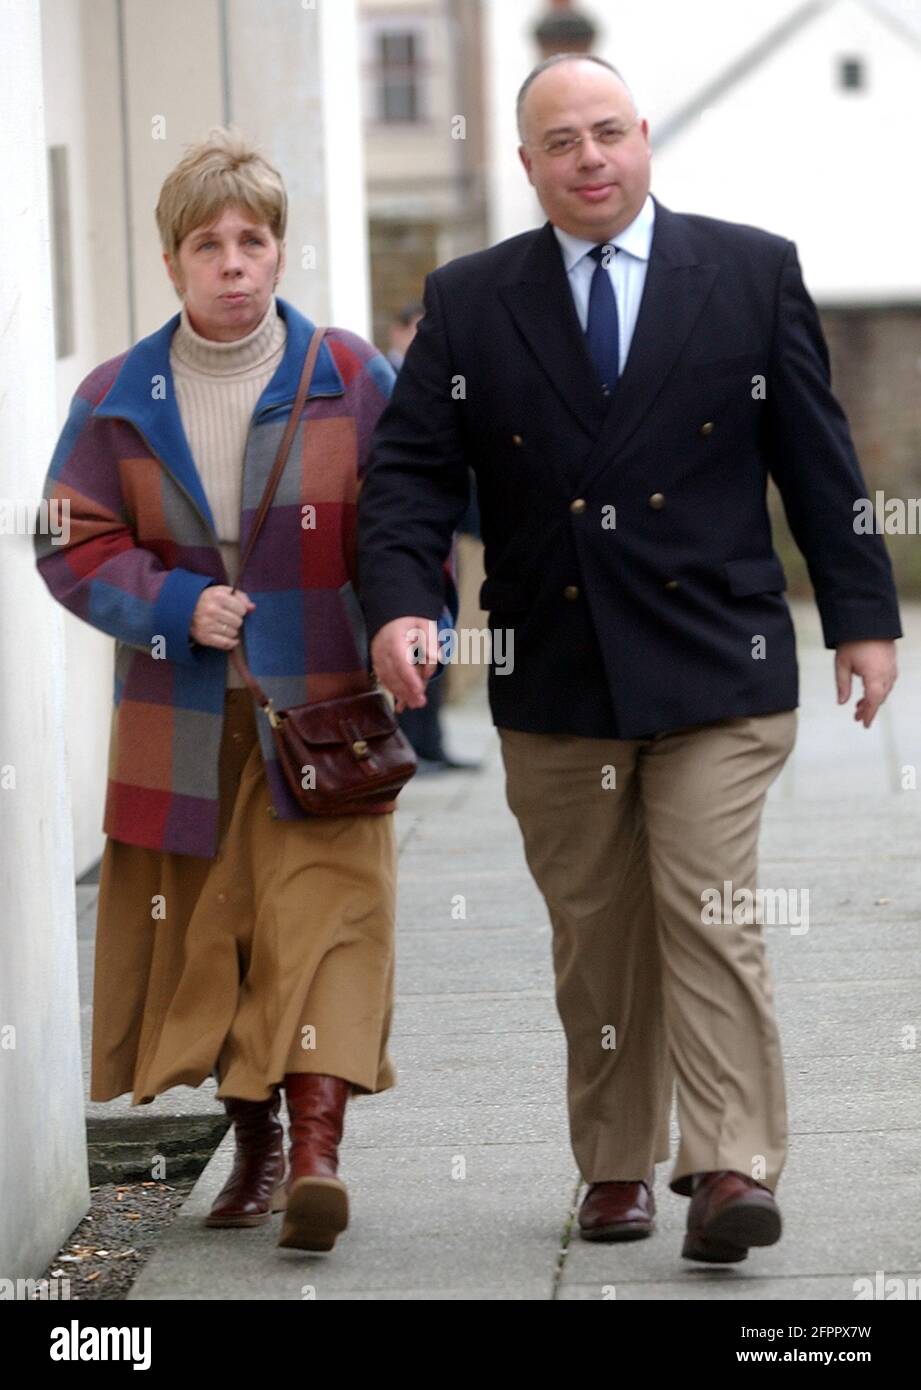 Tom herman, kommandant des Hafenamts von queens, verlässt das Gericht von fareham mit seiner Frau amanda. Foto mike Walker, 2005 Stockfoto